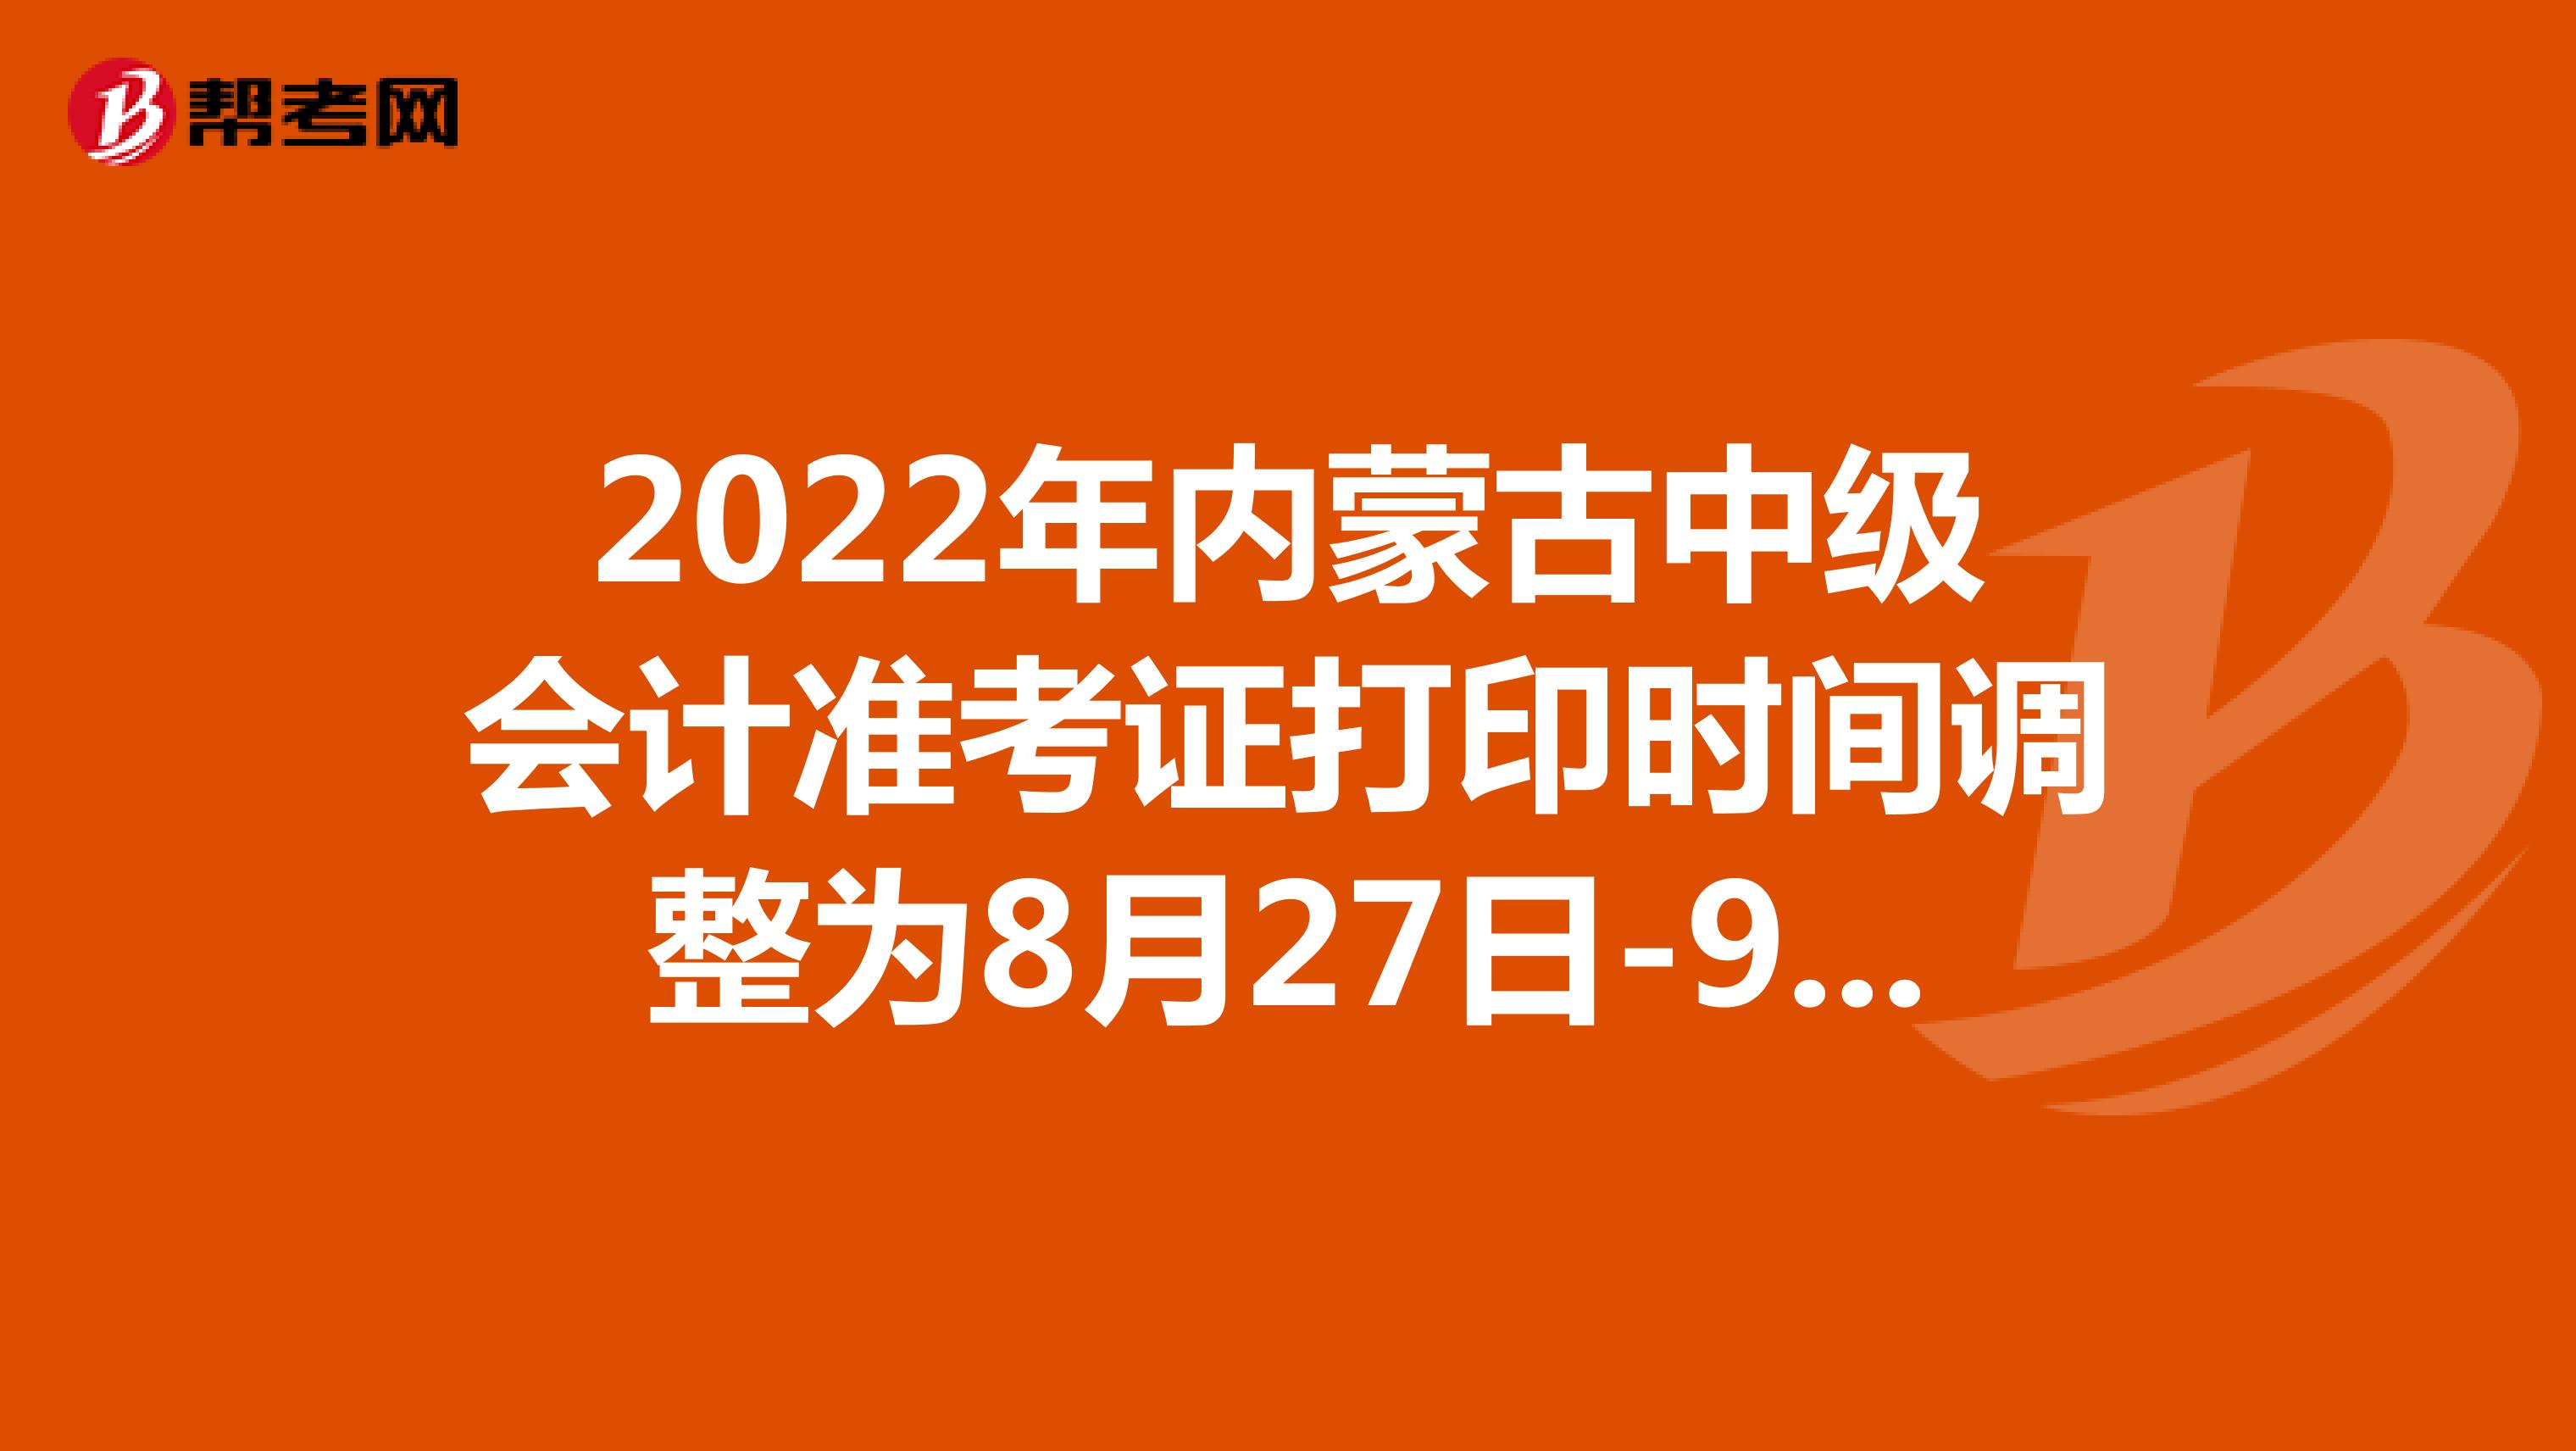 2022年内蒙古中级会计准考证打印时间调整为8月27日-9月2日